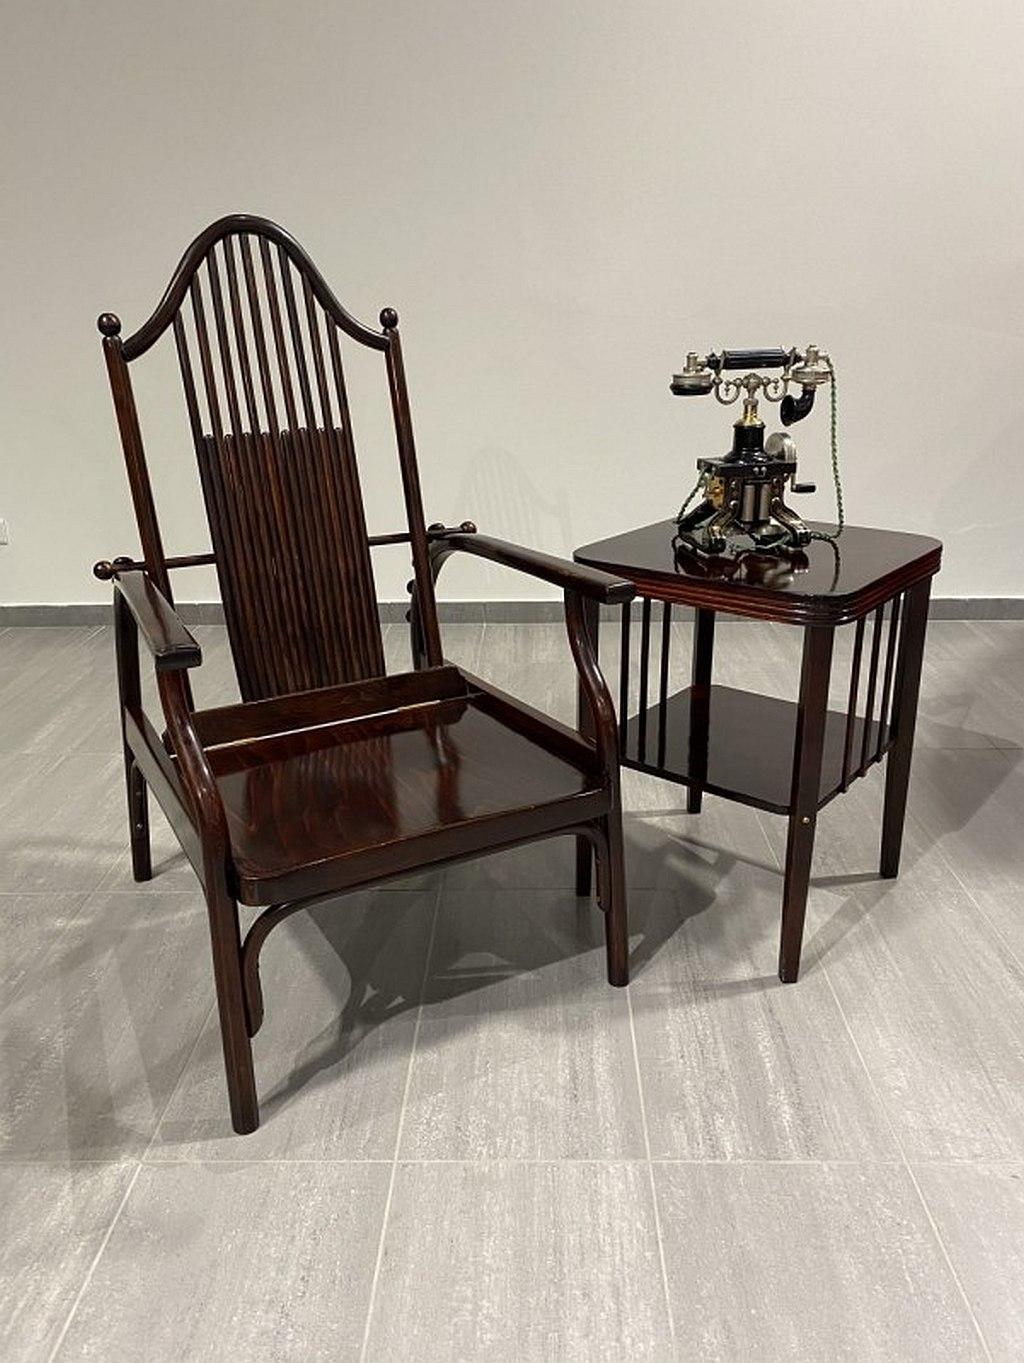 Sehr seltener verstellbarer Sessel mit Attributen von Josef Hoffmann, ausgeführt von Jacob & Josef Kohn oder Wienner Werkstatte. Professionell gebeizt und neu poliert.